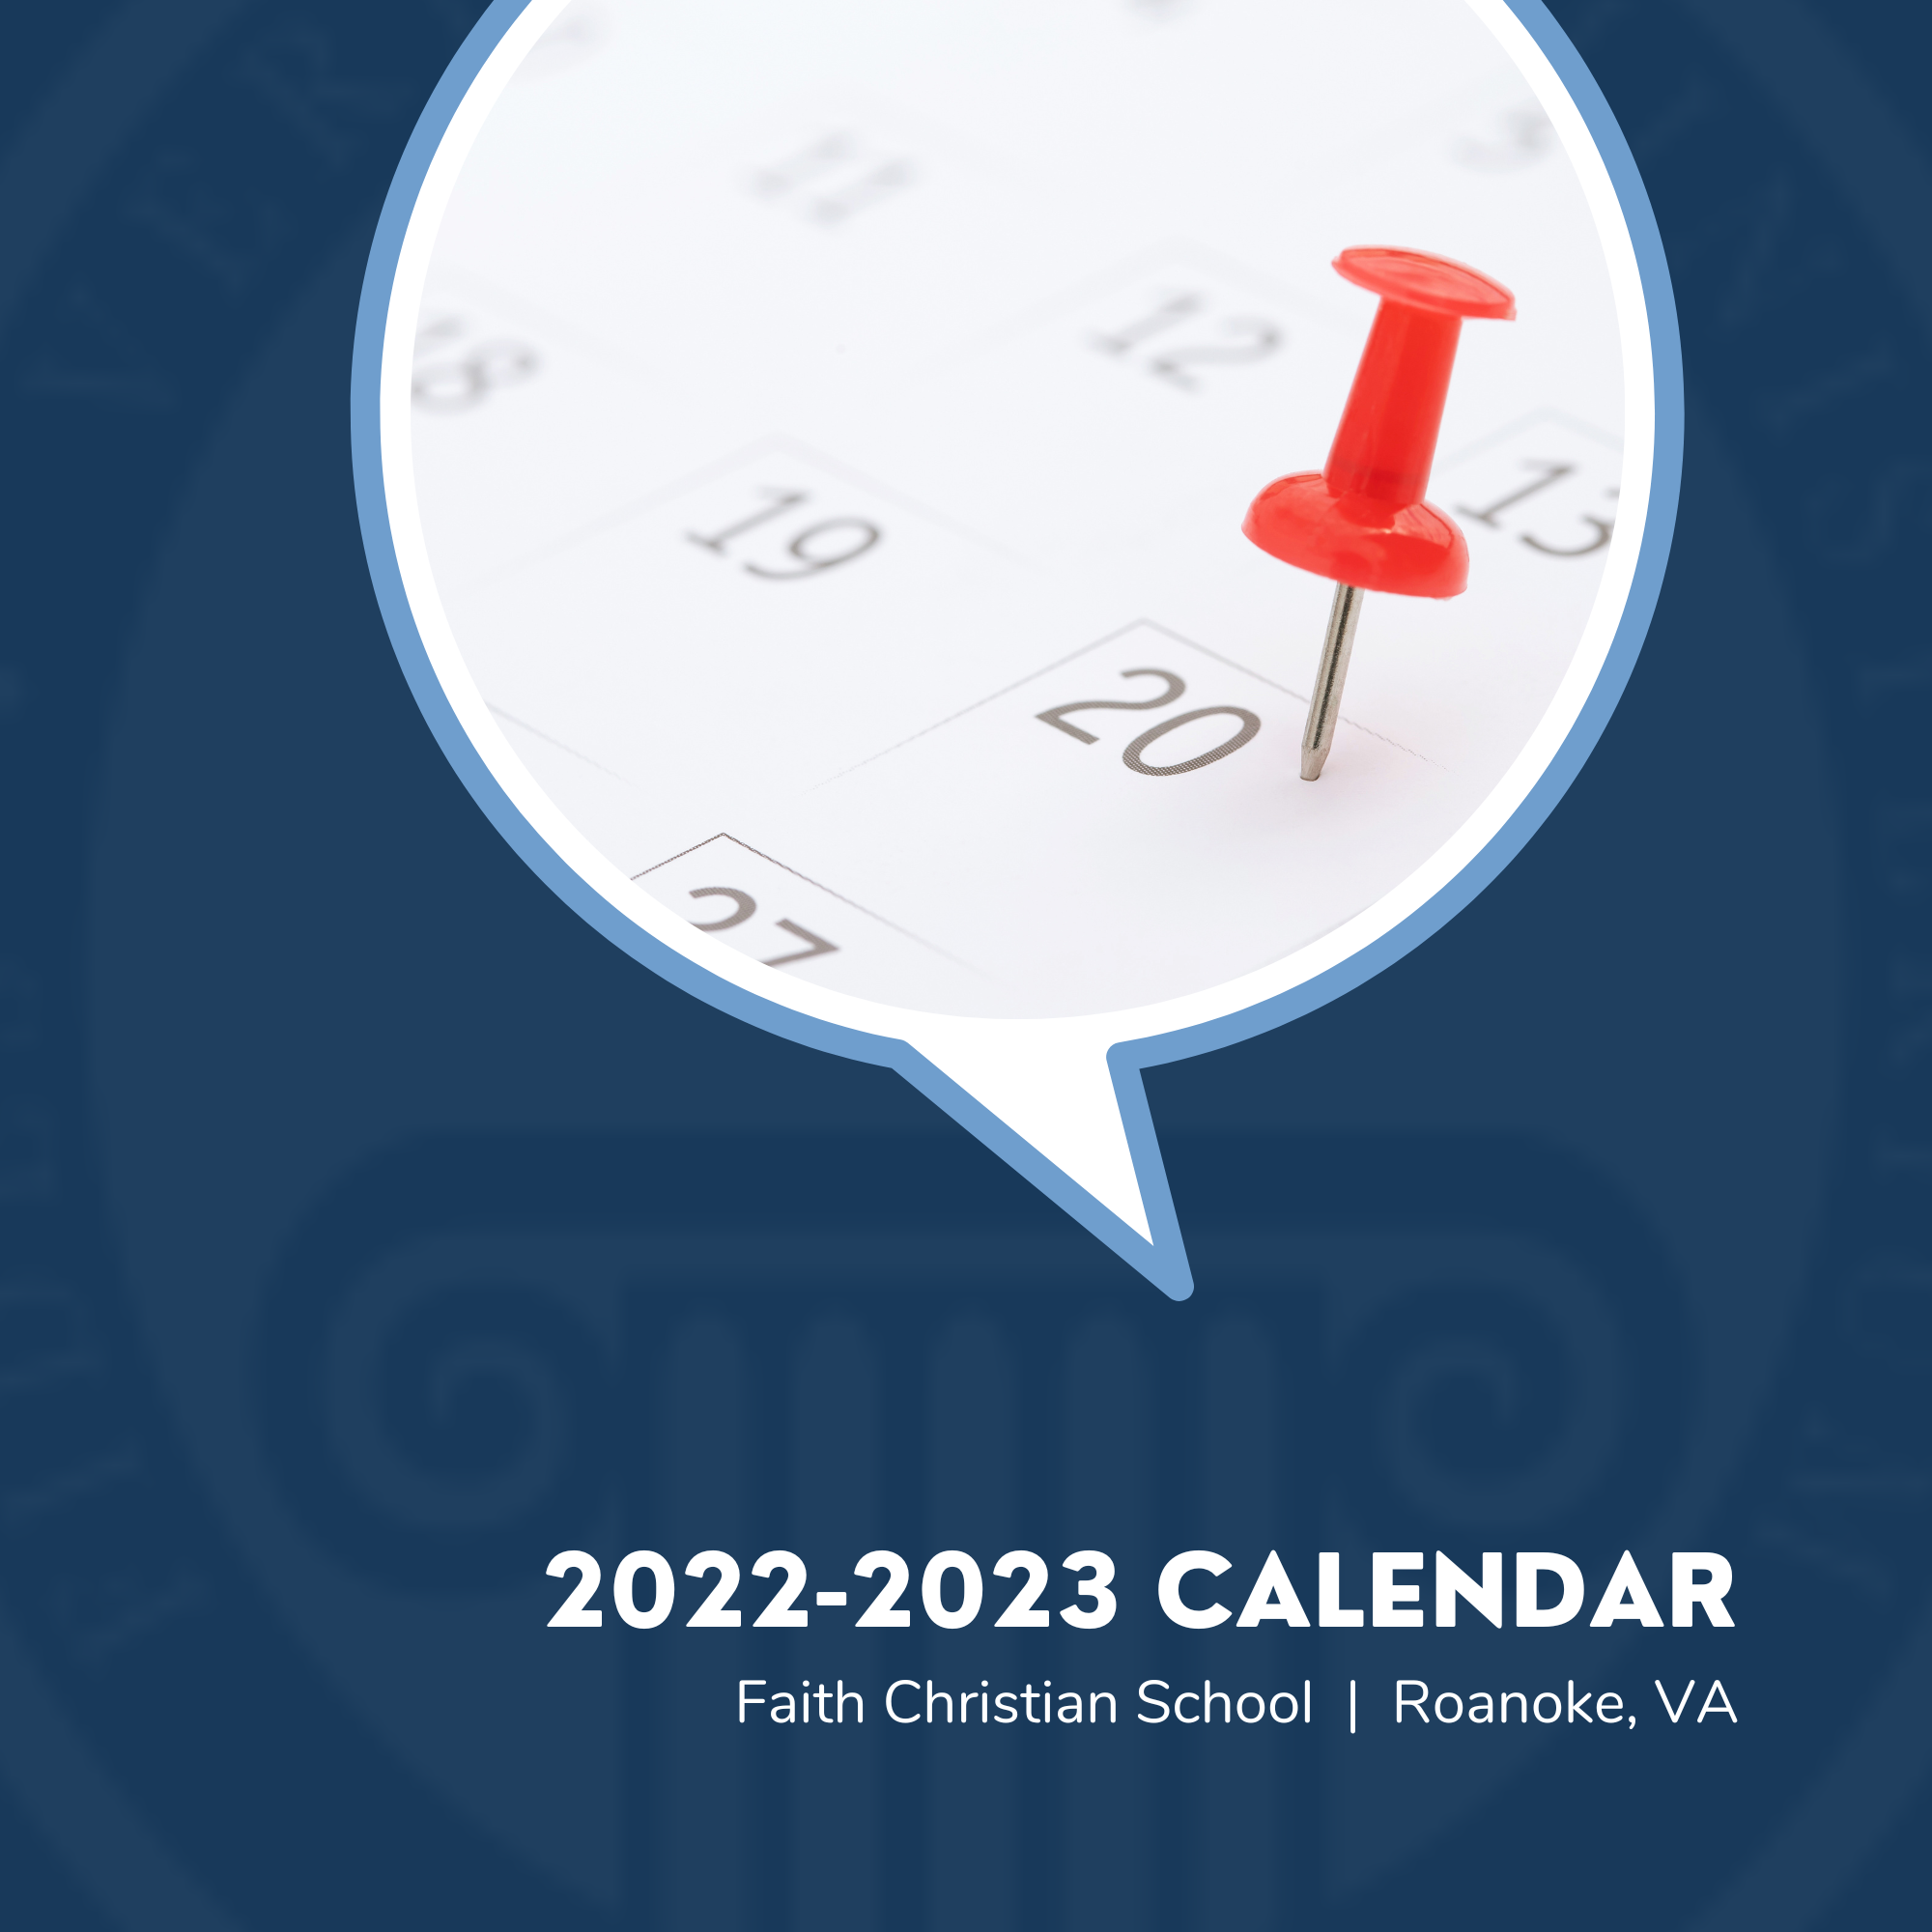 Faith Christian School Calendar 2022-2023